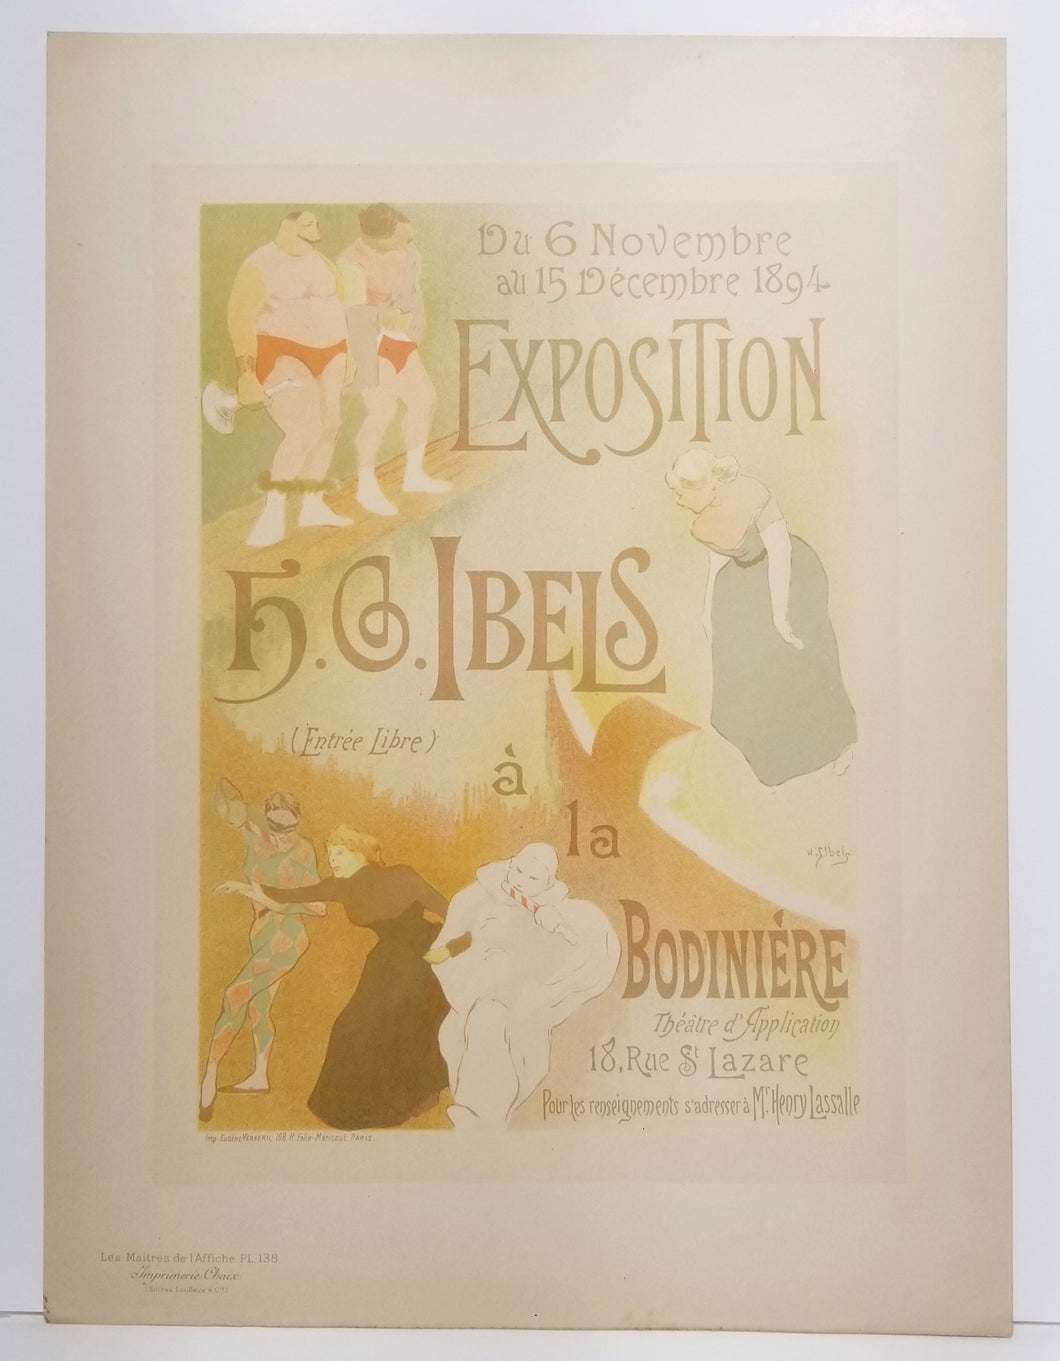 L'Exposition de H.G. Ibels. 1894-1898.